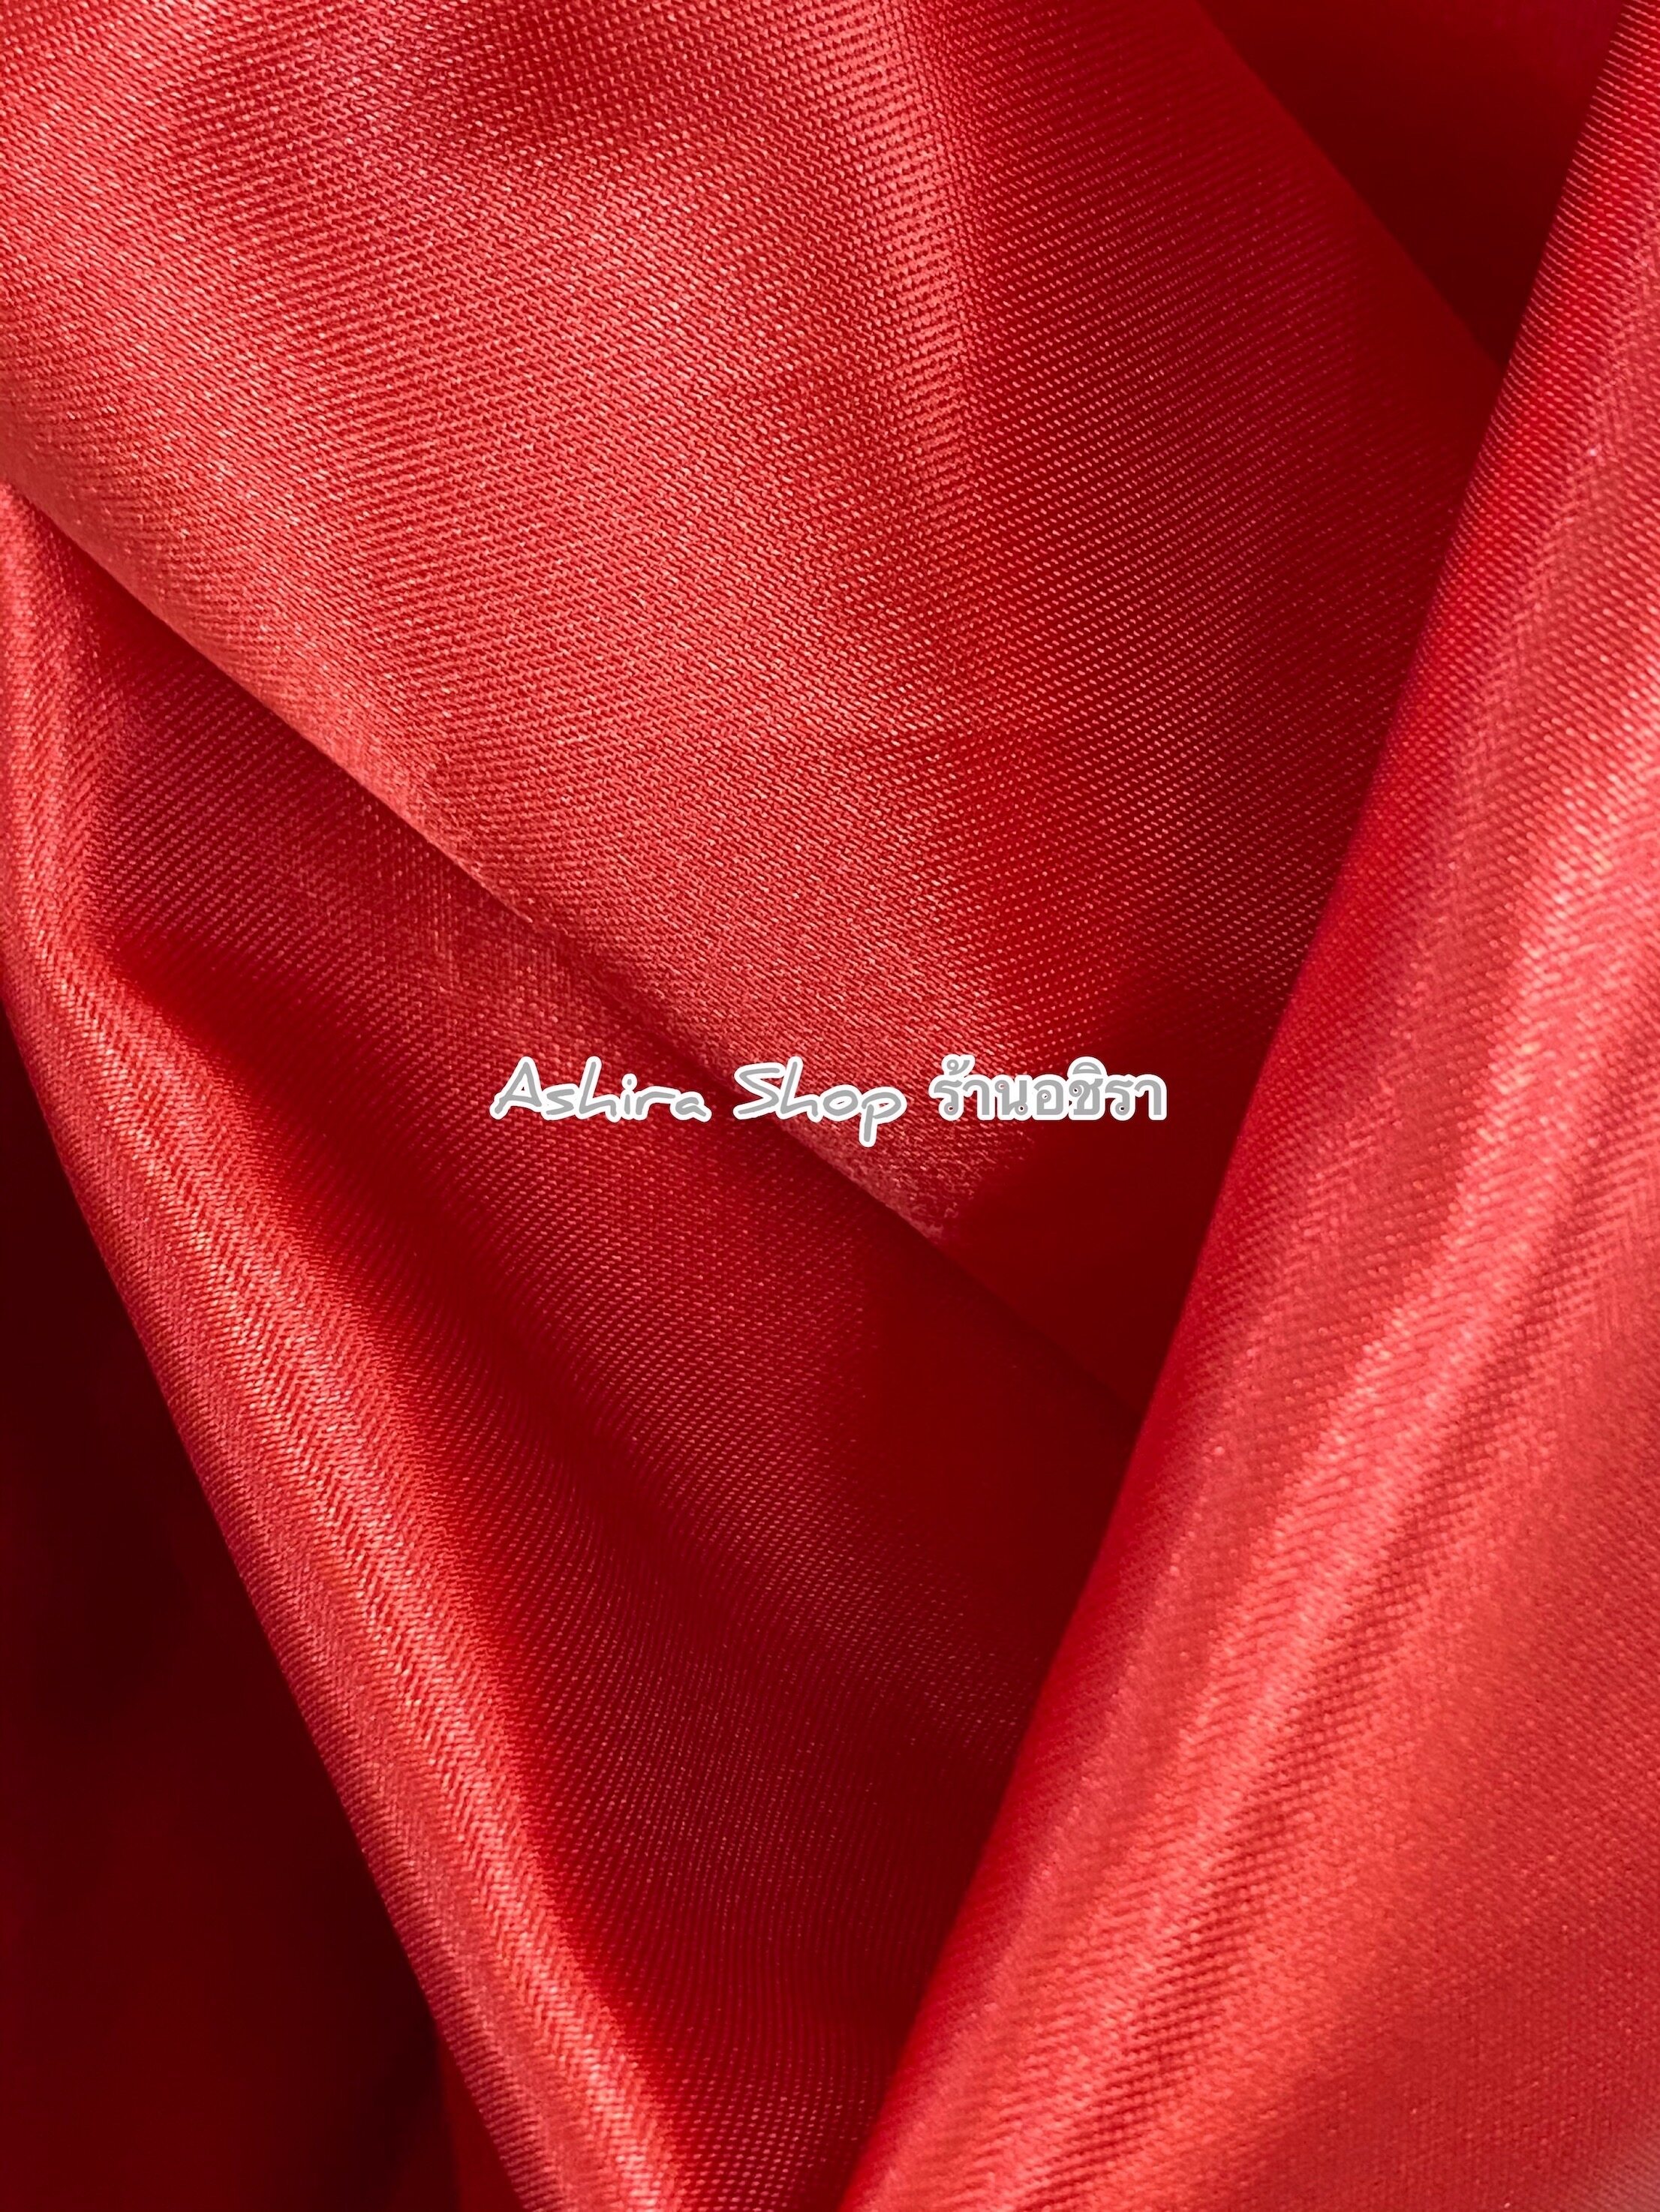 ผ้าต่วน ผ้าเครป ผ้าเงา ผ้าเมตร ขนาด 100*110 ซม. (สีเบอร์ 31 - 34) ร้านอชิรา Ashira SHOP